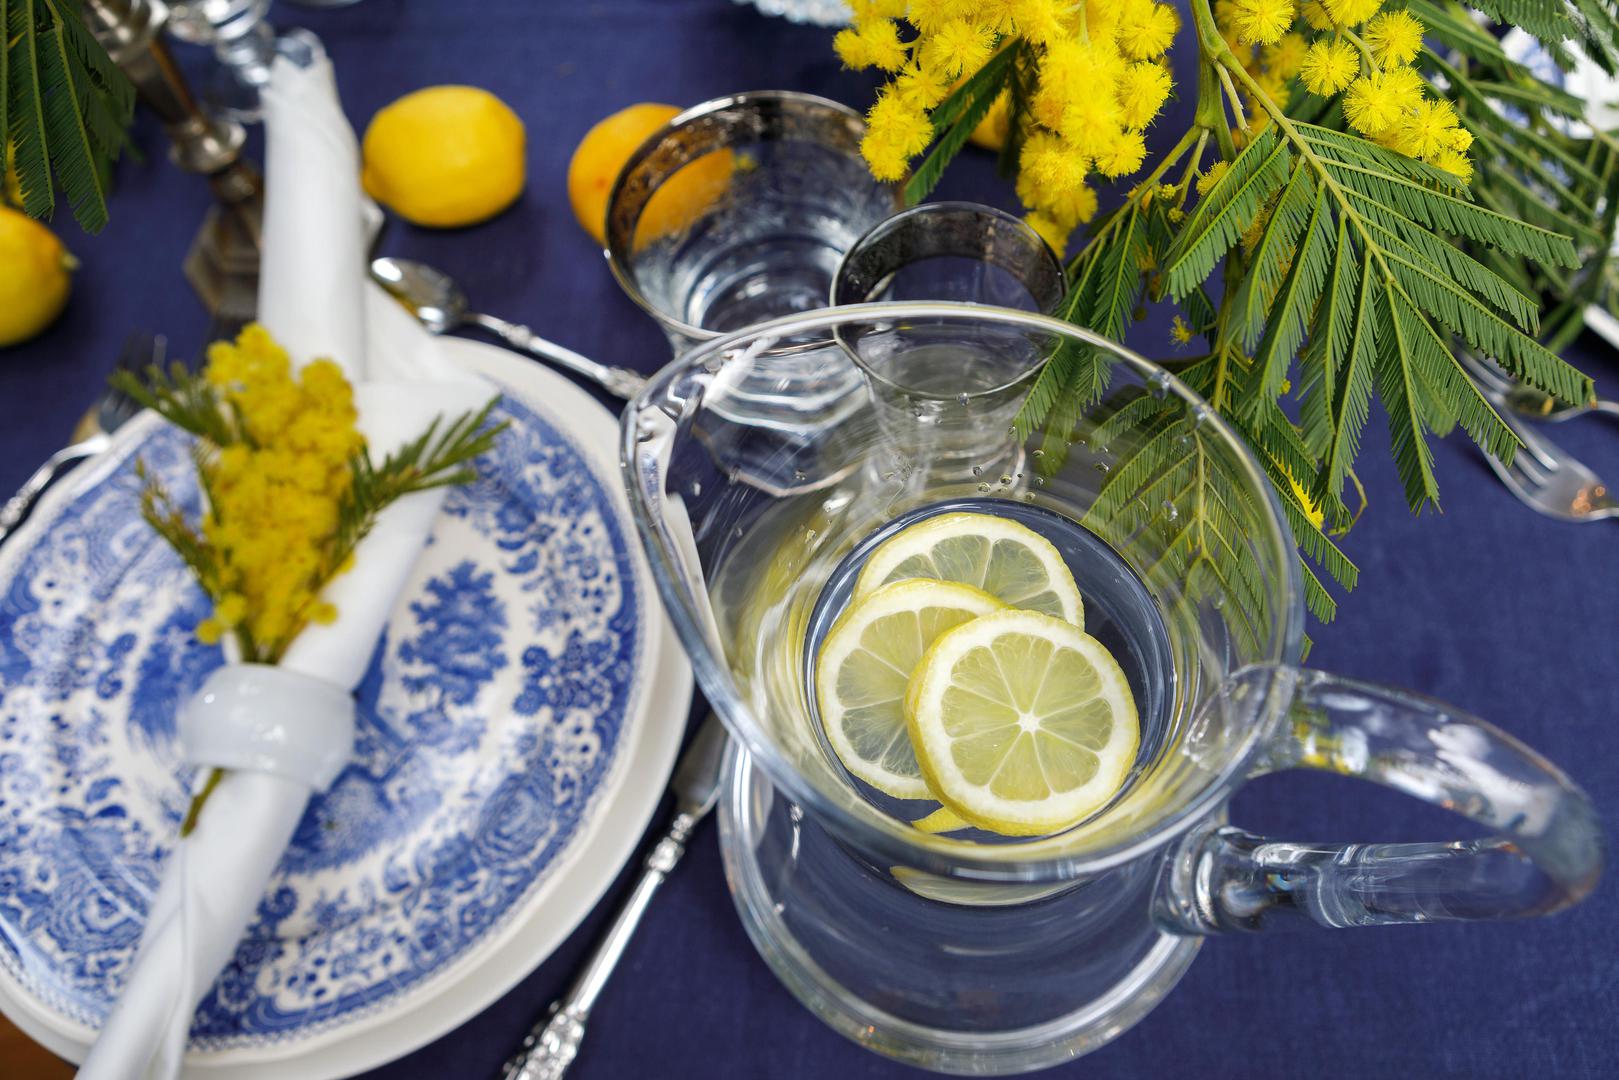 Iskoristite sezonu mimoza za atraktivnu postavu na stolu - s plavom se mimoze vole javno